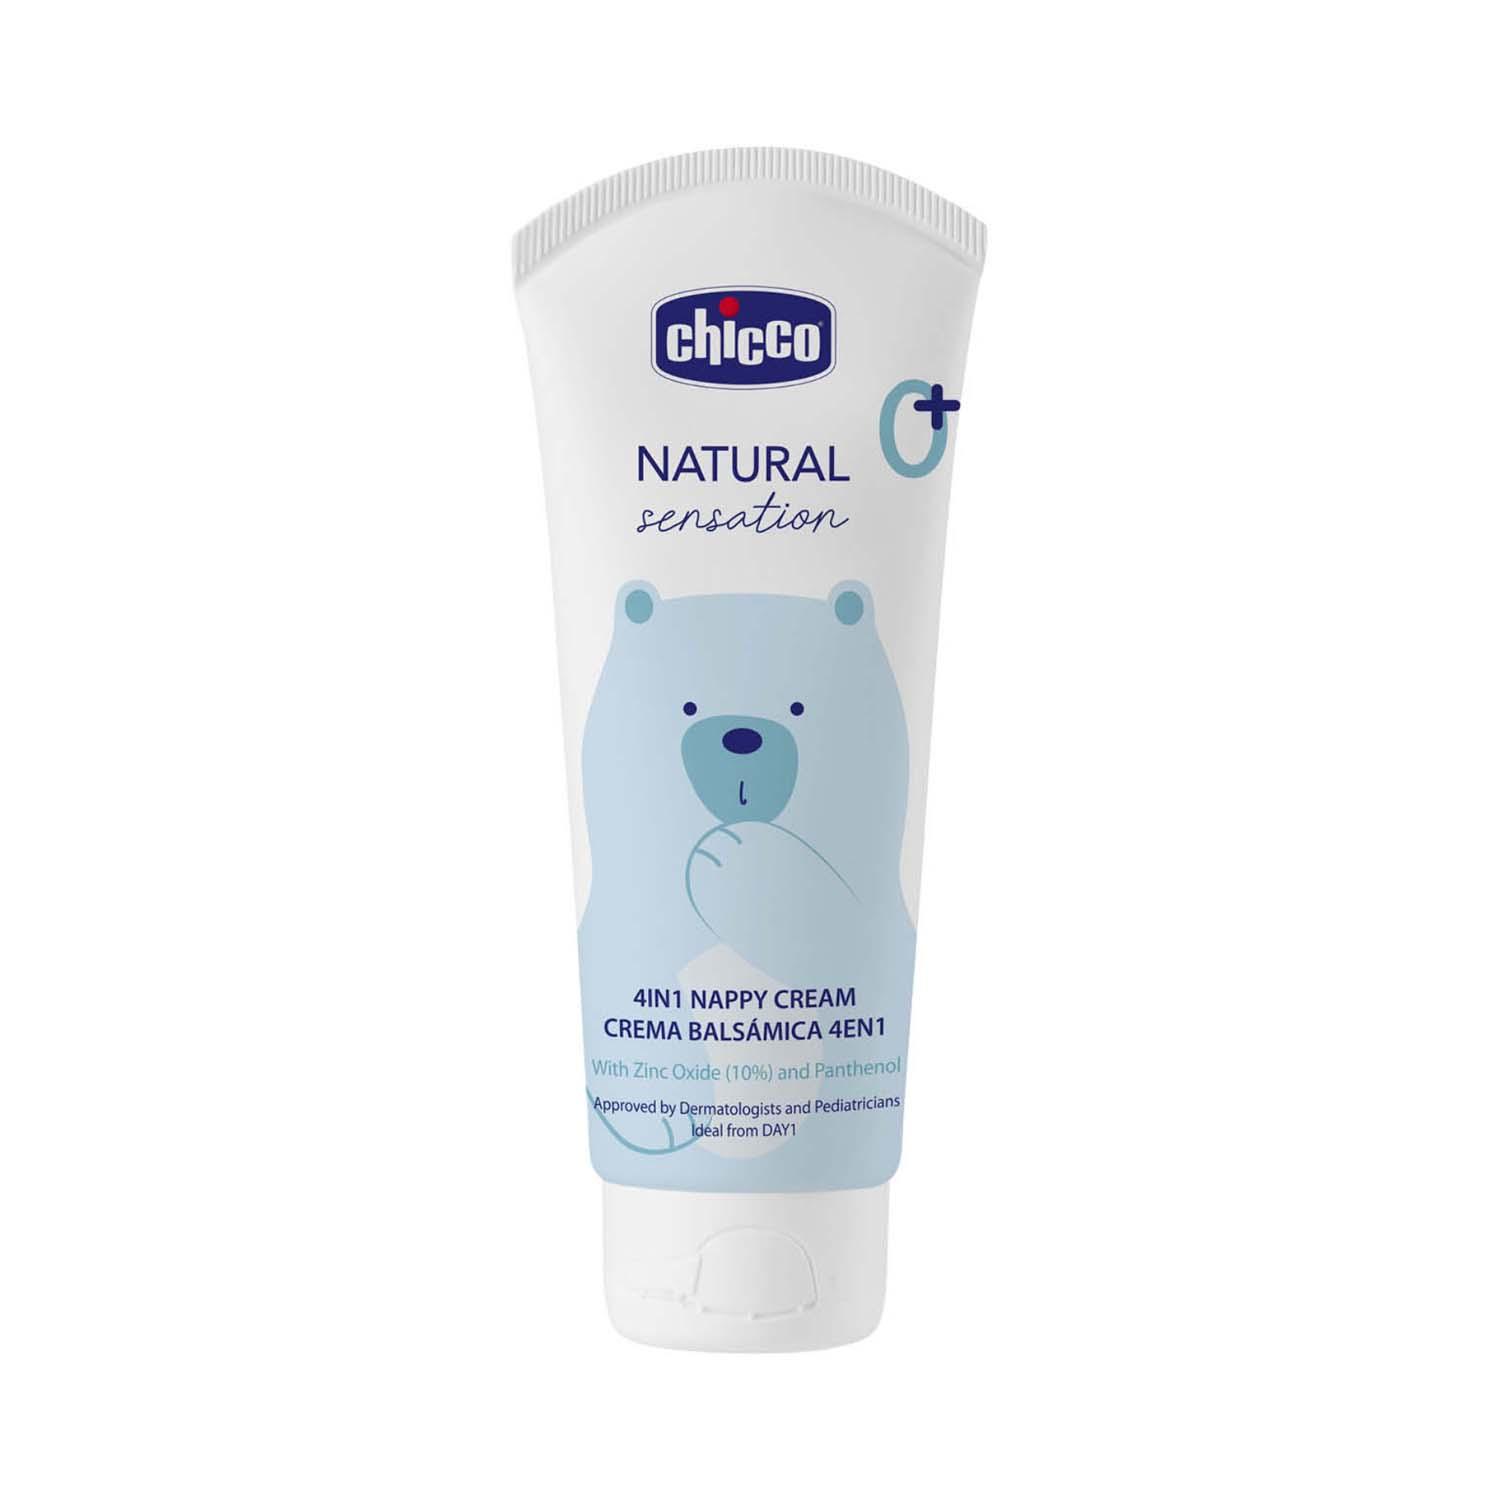 Chicco | Chicco 4In1 Nappy Cream Natural Sensation (100 ml)